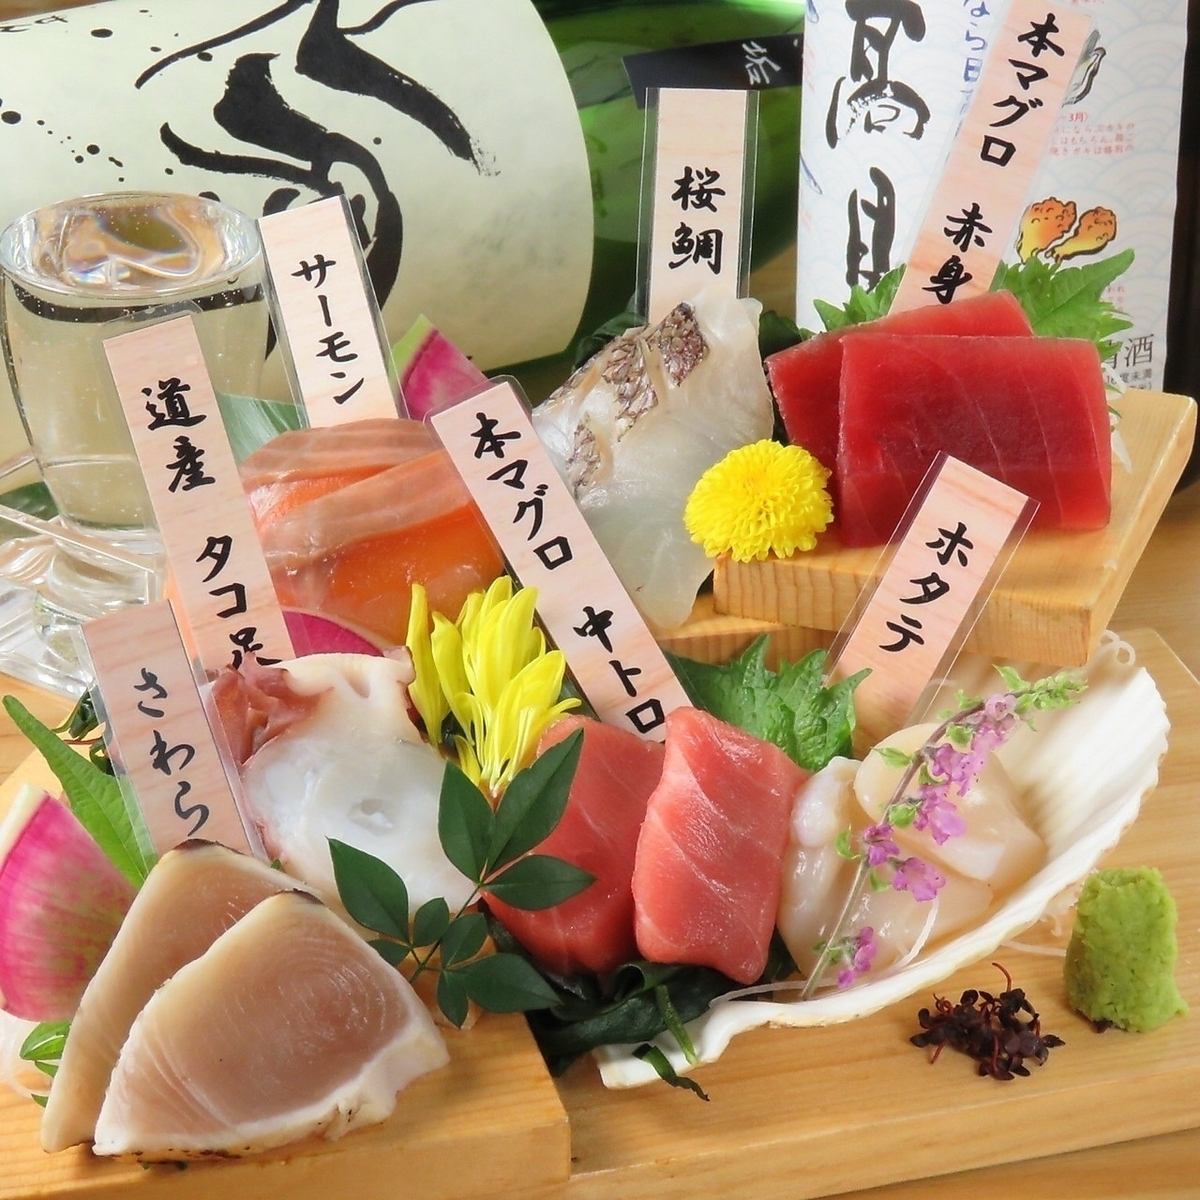 Sashimi in the red! Sashimi ★ 550 yen per person ♪ We also boast fresh meat sashimi.